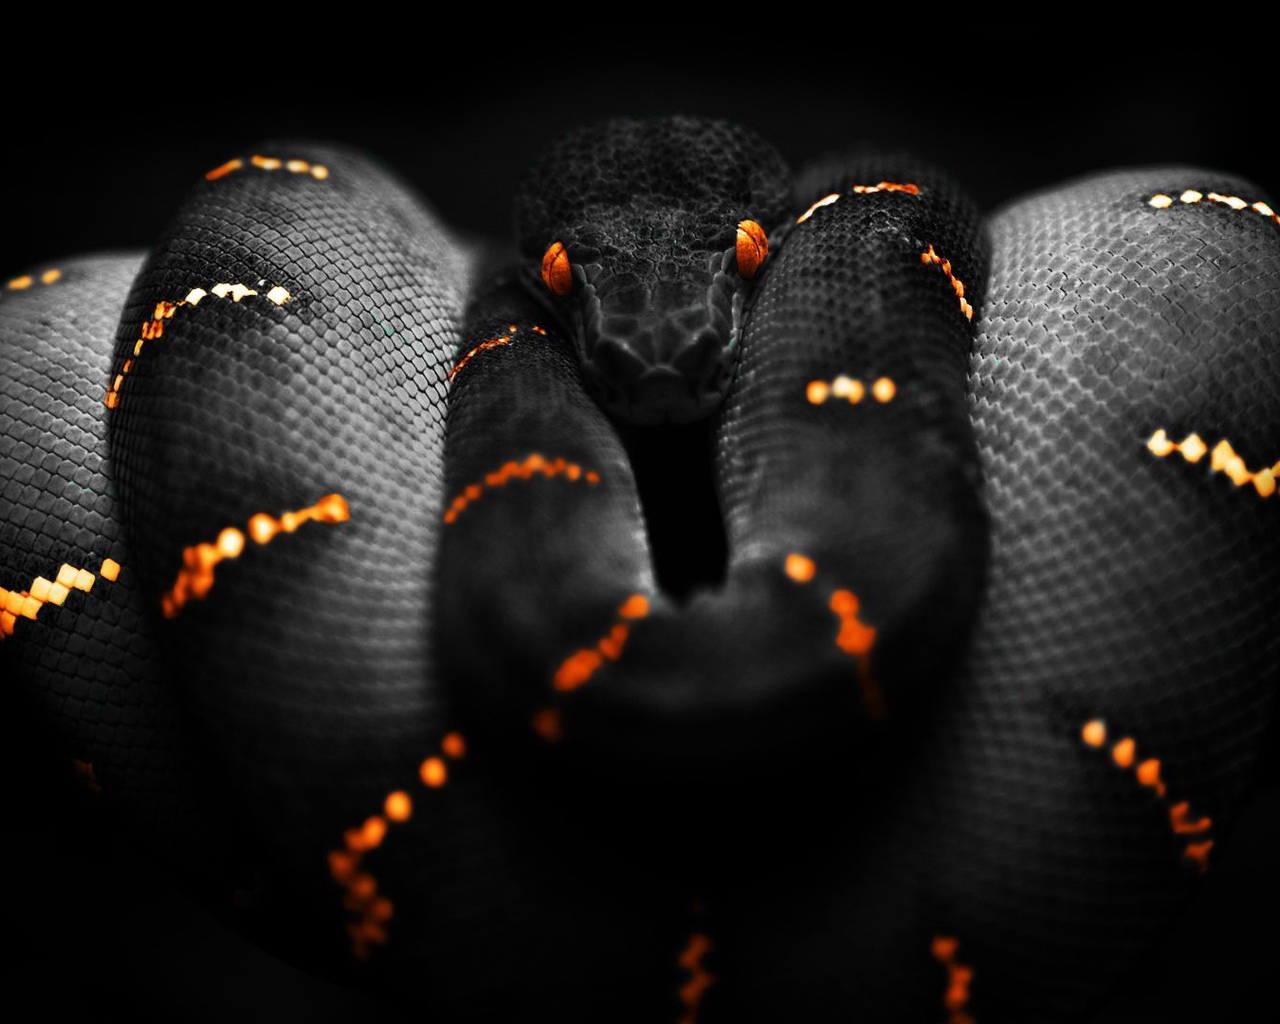 Картинка: Змея, кожа, чешуя, глаза, полосы, опасность, чёрный фон